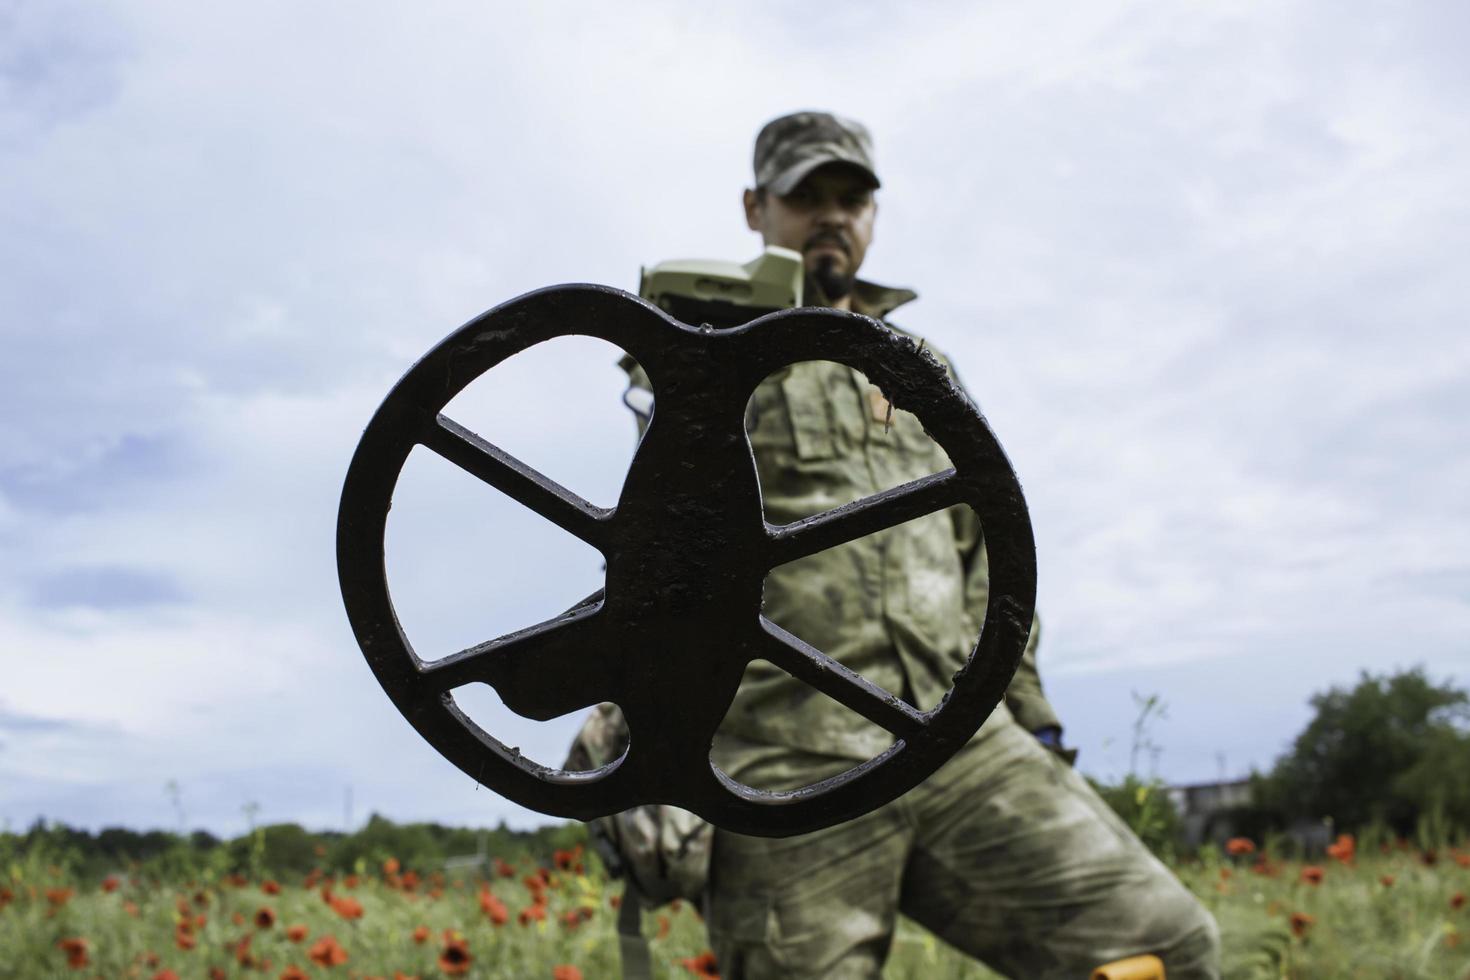 Soldat mit einem Metalldetektor in Feldern foto